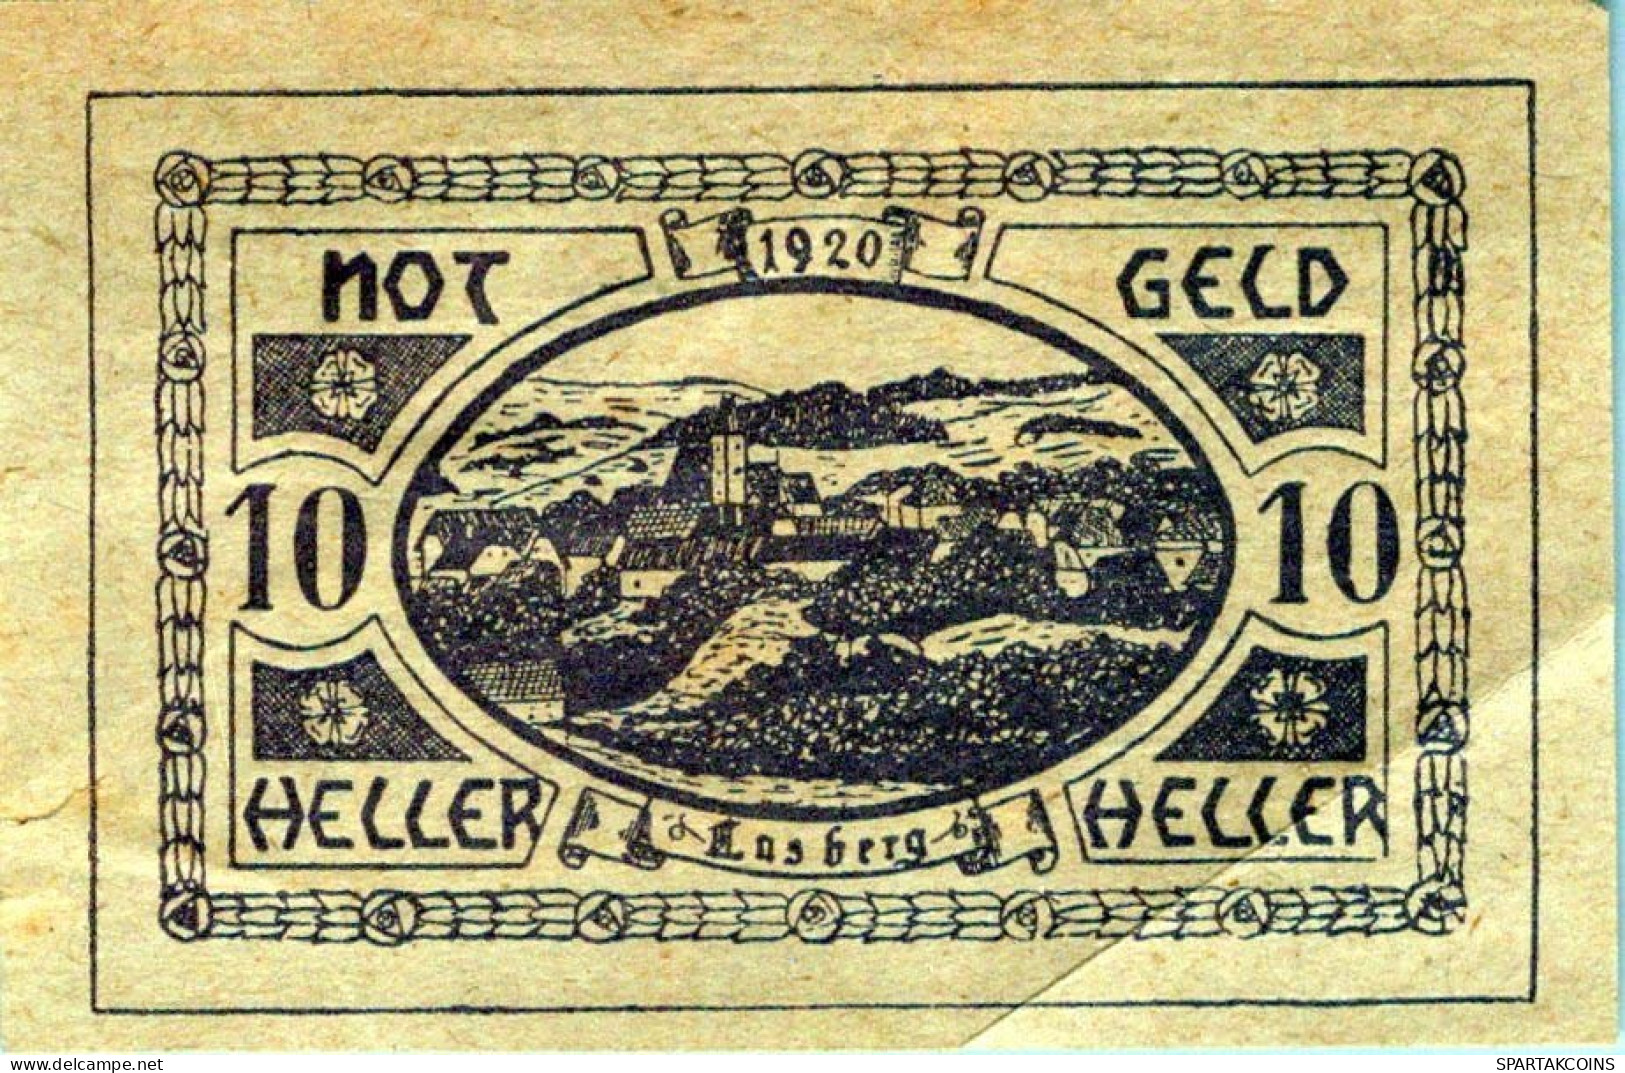 10 HELLER 1920 Stadt LASBERG Oberösterreich Österreich Notgeld Banknote #PD788 - [11] Emissions Locales